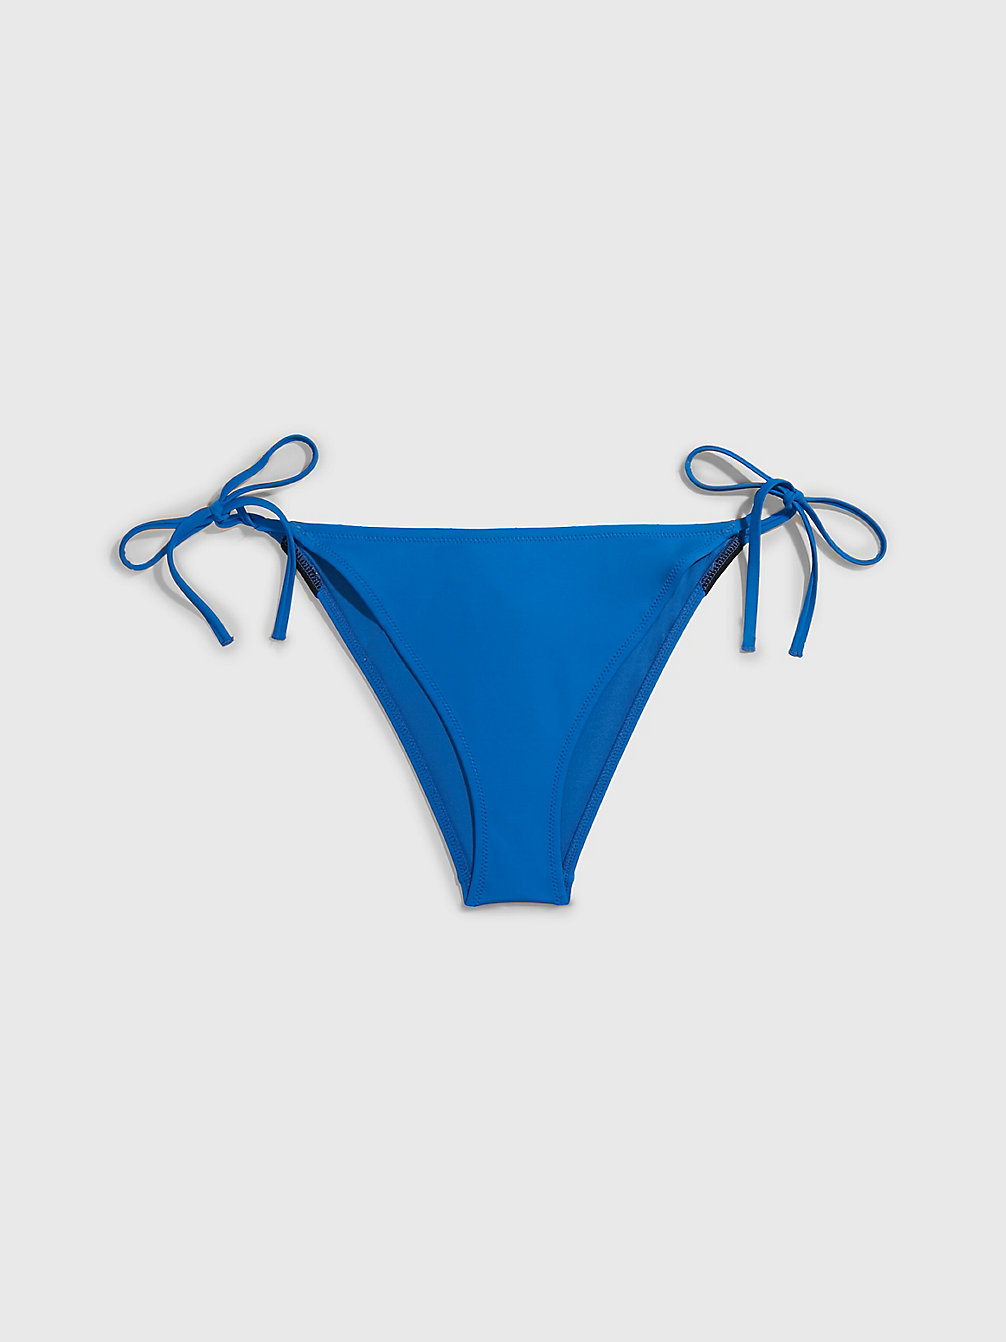 DYNAMIC BLUE Tie Side Bikini Bottoms - Intense Power undefined women Calvin Klein